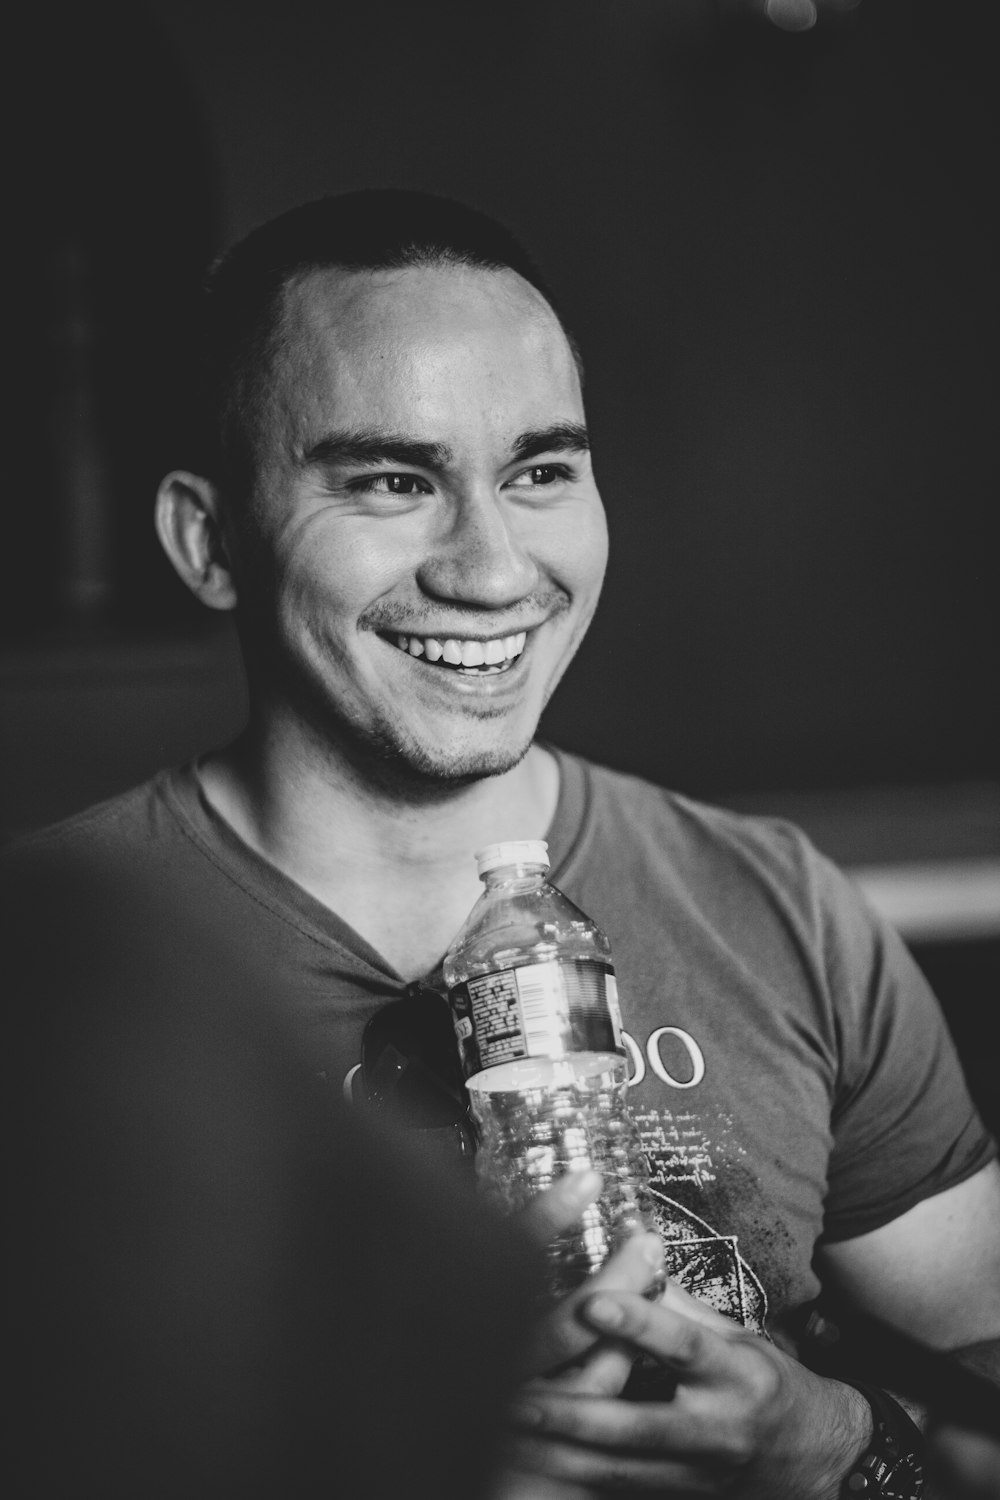 homme souriant tenant de l’eau claire en bouteille